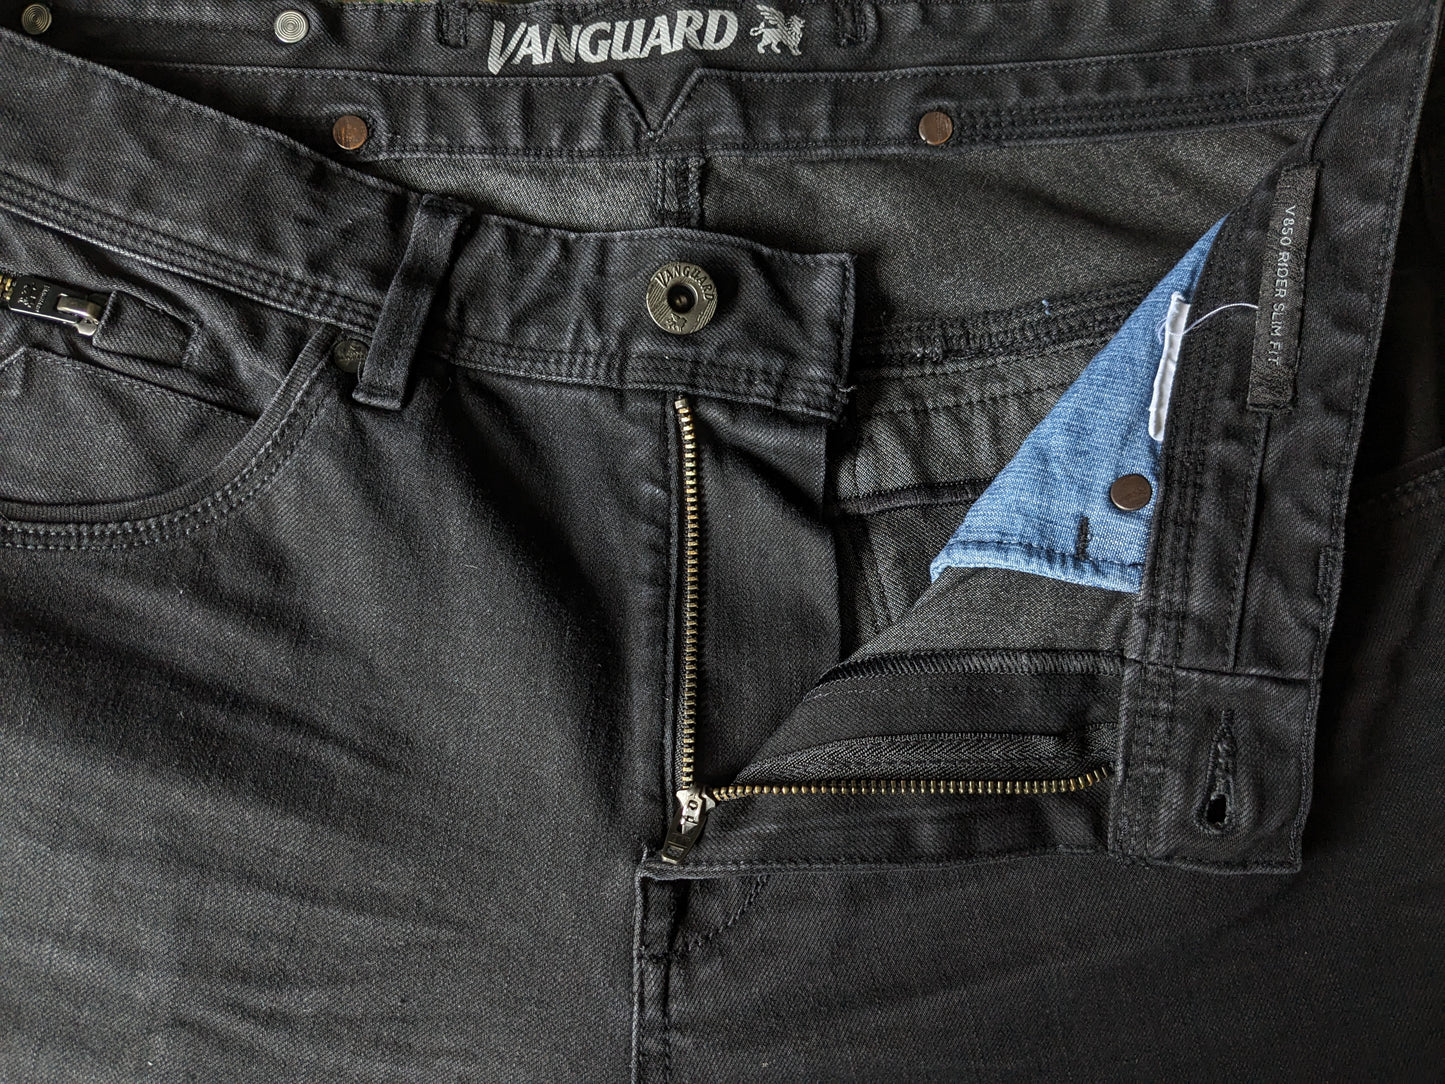 Jeans Vanguard. Couleur noire. Taille W34 - L36. extensible. Tapez "V850 Rider". Slim Fit.